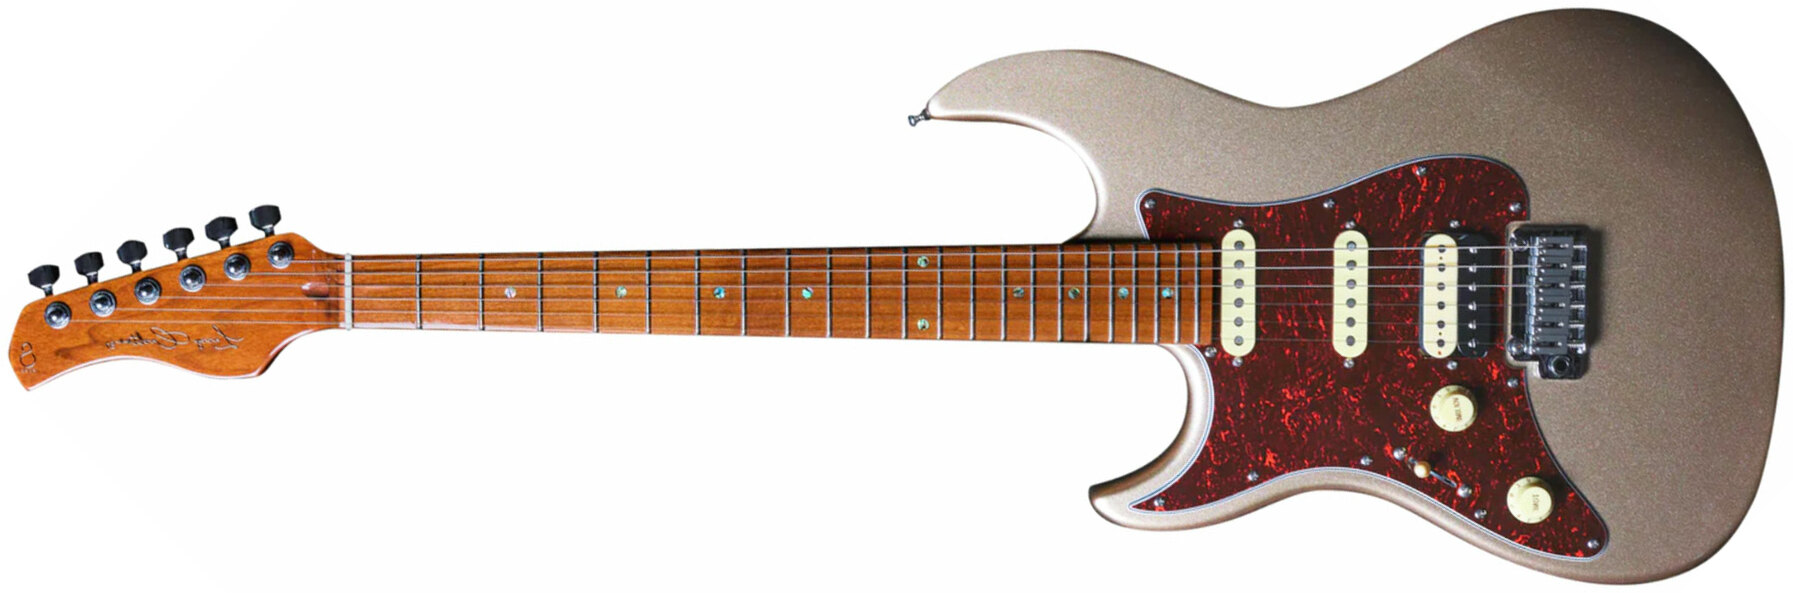 Sire Larry Carlton S7 Lh Signature Gaucher Hss Trem Mn - Champagne Gold Metal - Elektrische gitaar in Str-vorm - Main picture